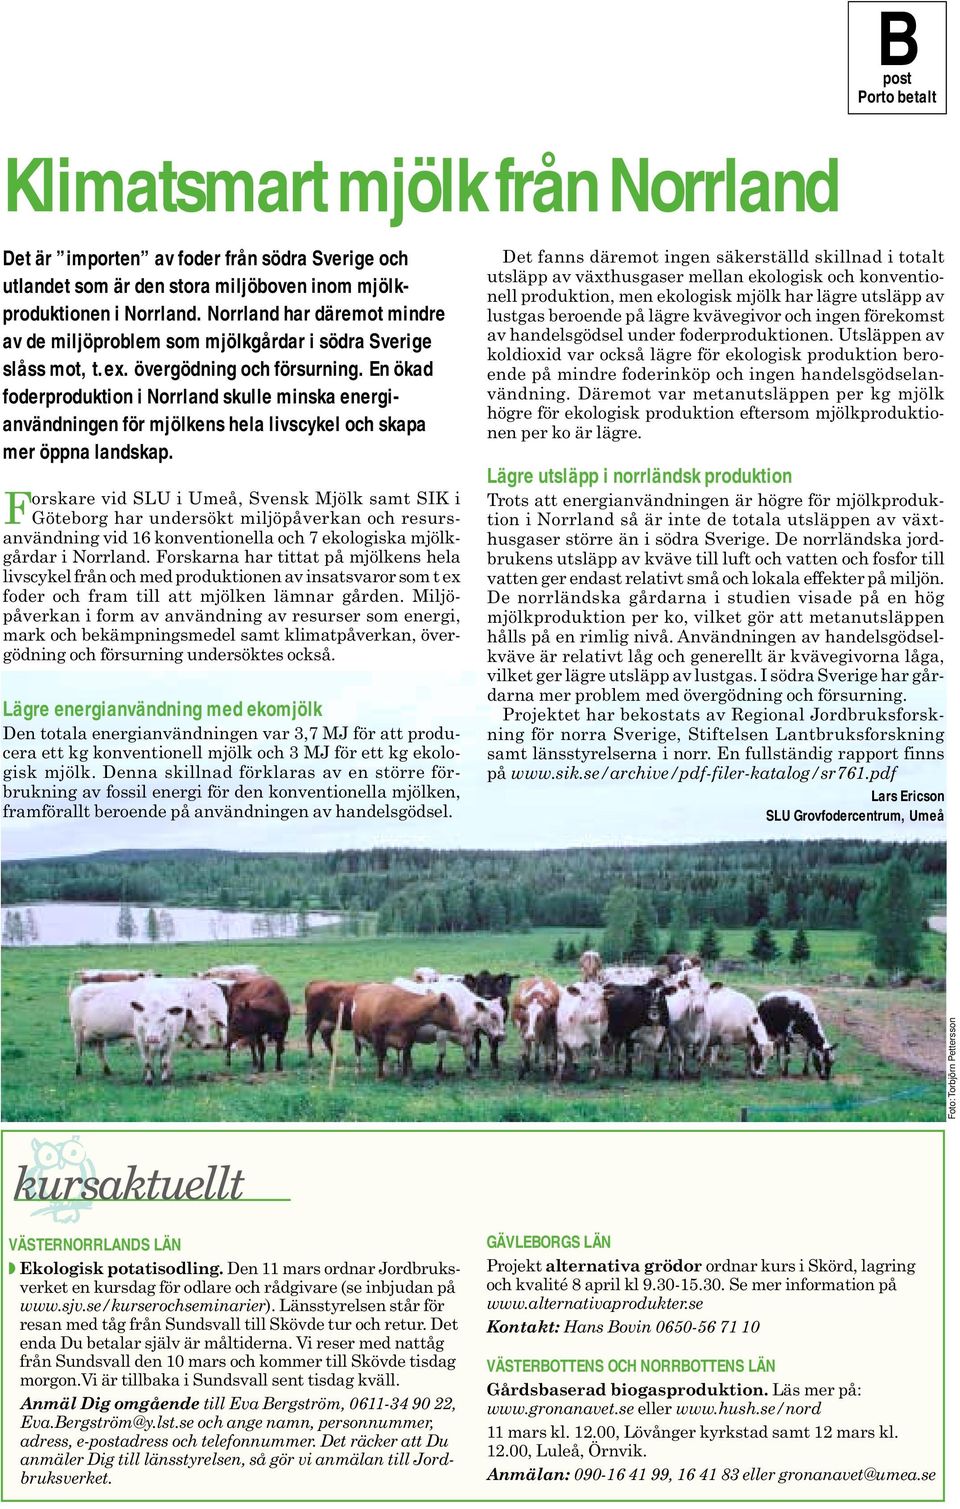 En ökad foderproduktion i Norrland skulle minska energianvändningen för mjölkens hela livscykel och skapa mer öppna landskap.